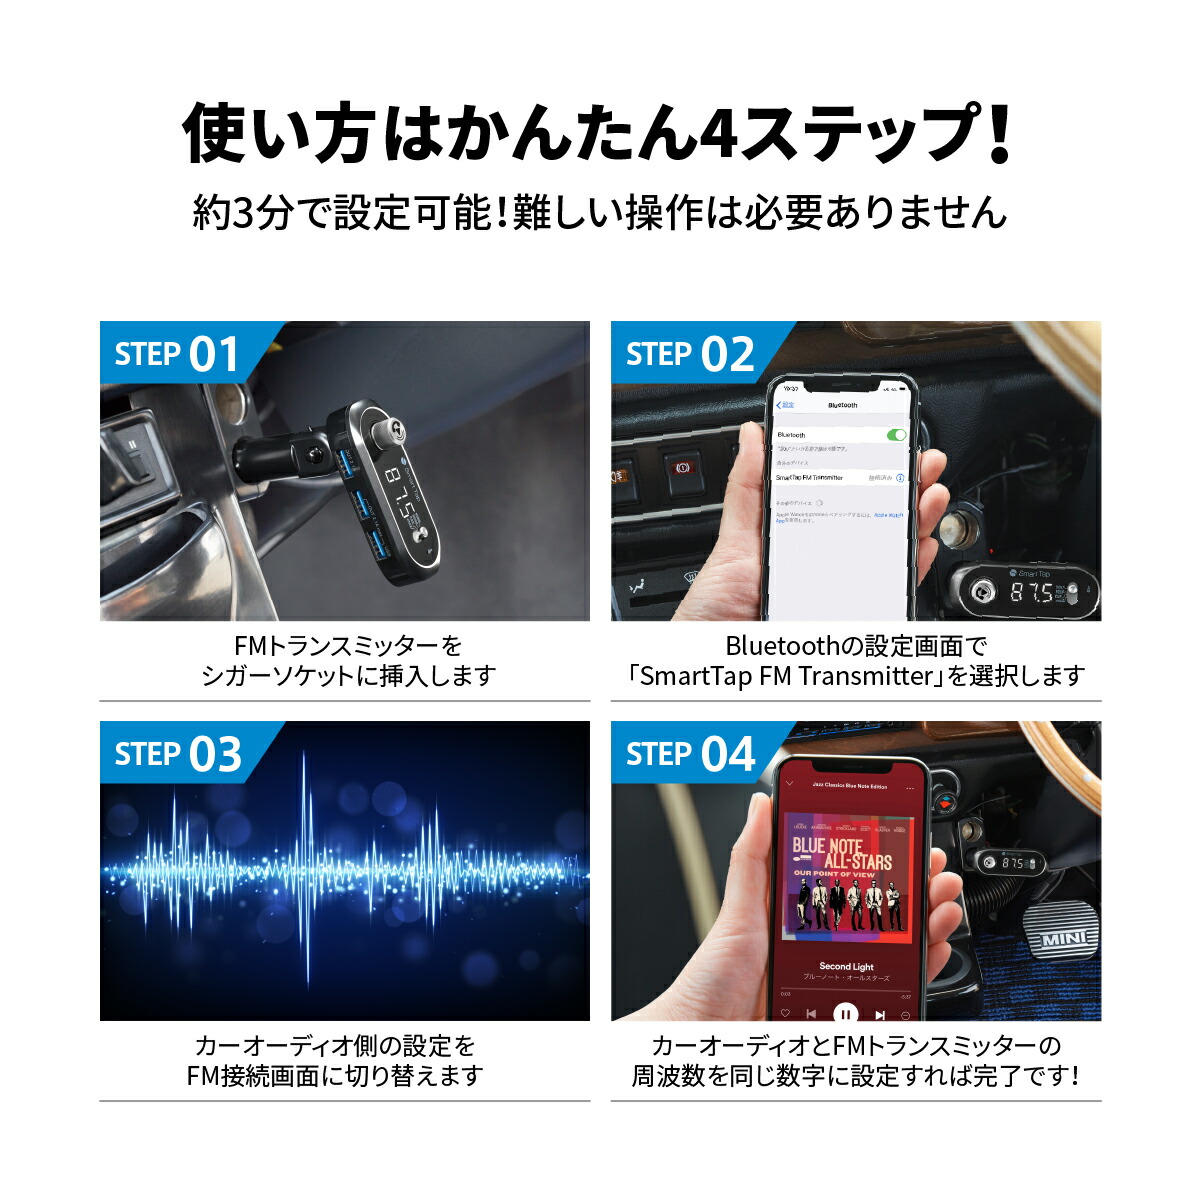 楽天市場 スーパーsale ポイントバック Fmトランスミッター Bluetooth 高音質 全239ch 76 1 99 9mhz 12 24v対応 車 充電 ワイヤレス Smart Tap Fm トランスミッター Bluetooth 車 ギフト Smart Tap 楽天市場店